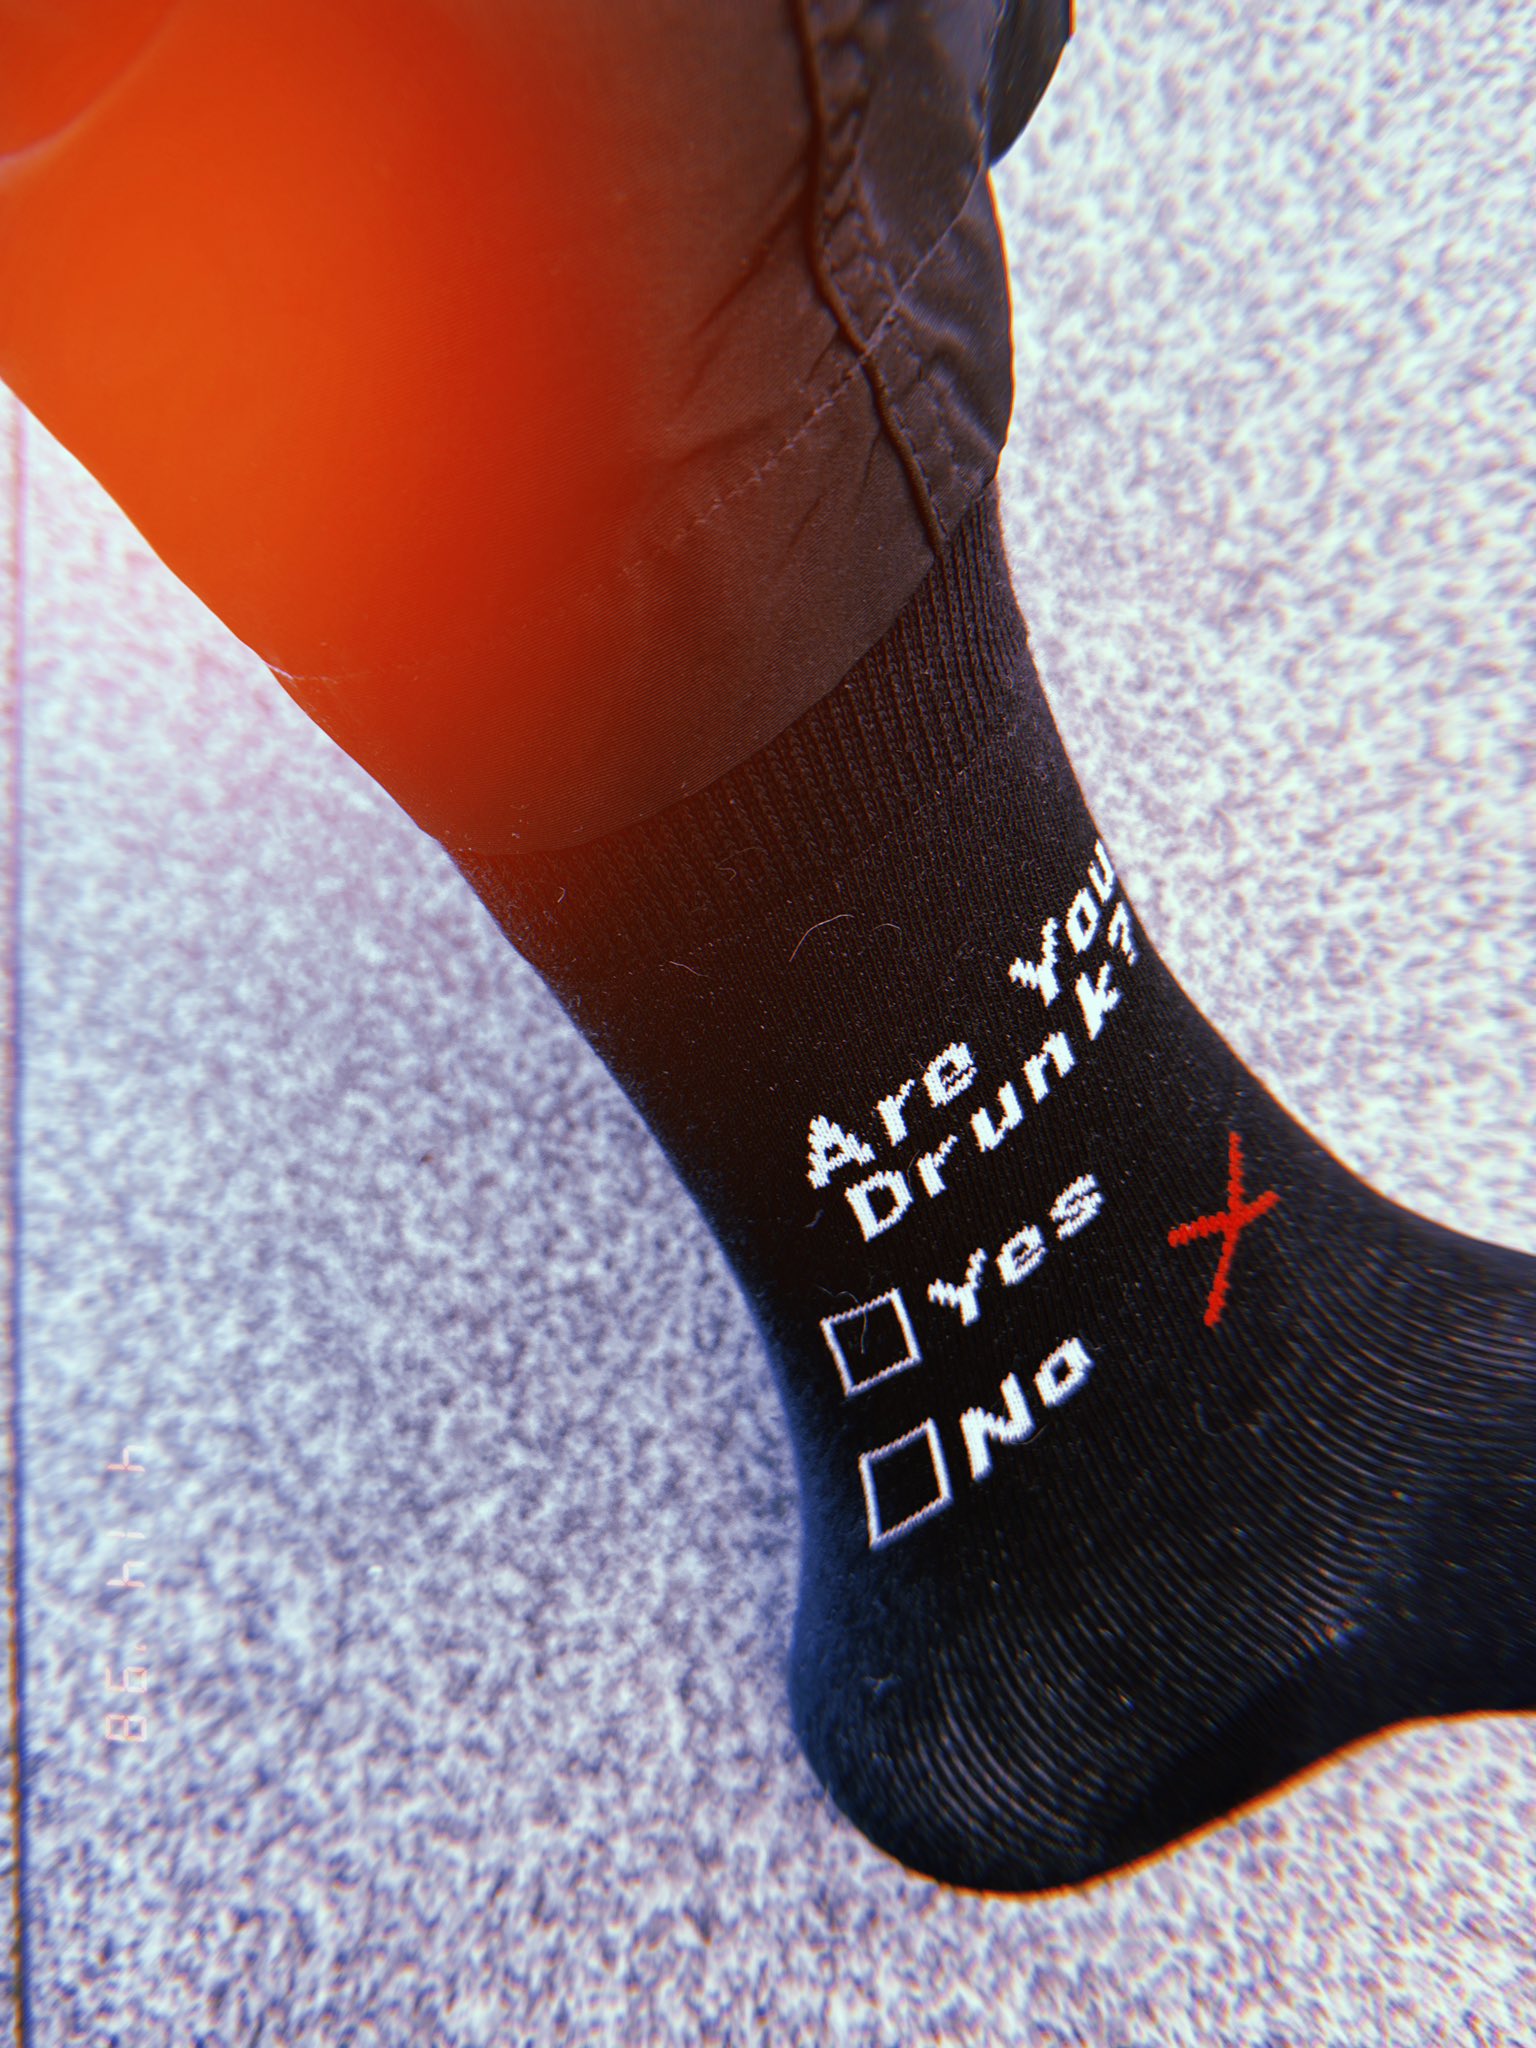 Ansem's socks